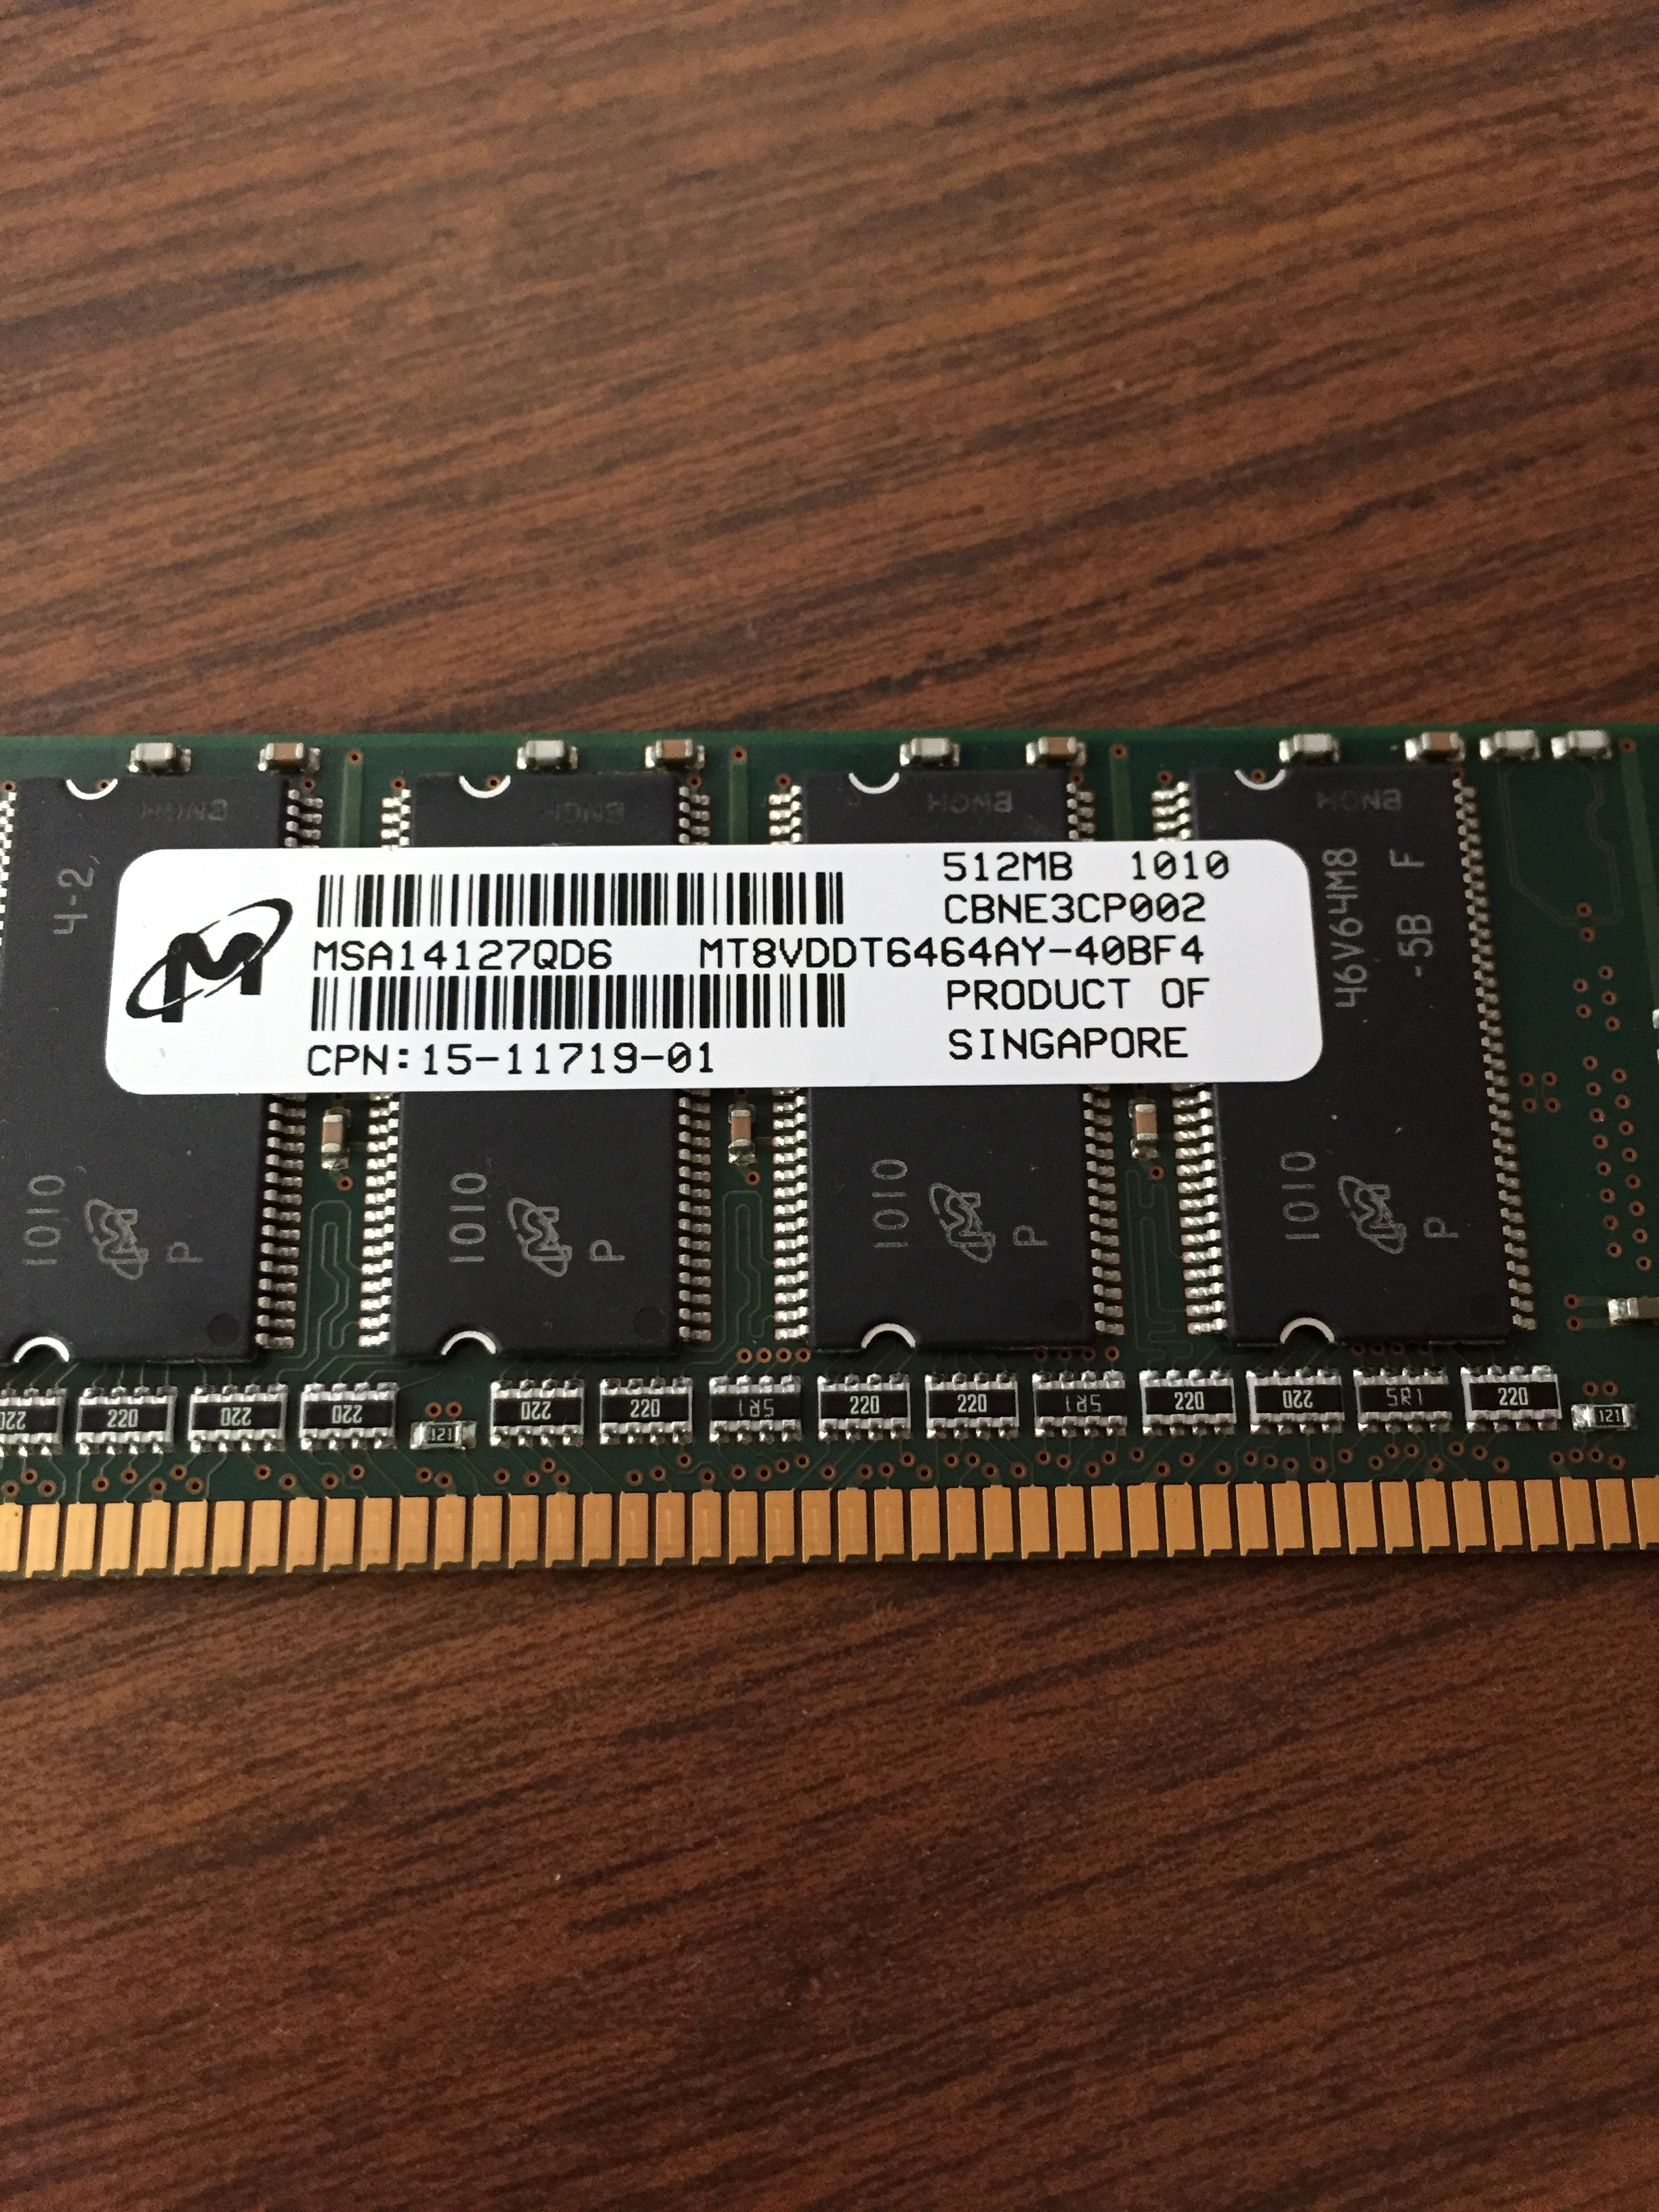 ASA 5505 memory upgrade question - Cisco Community